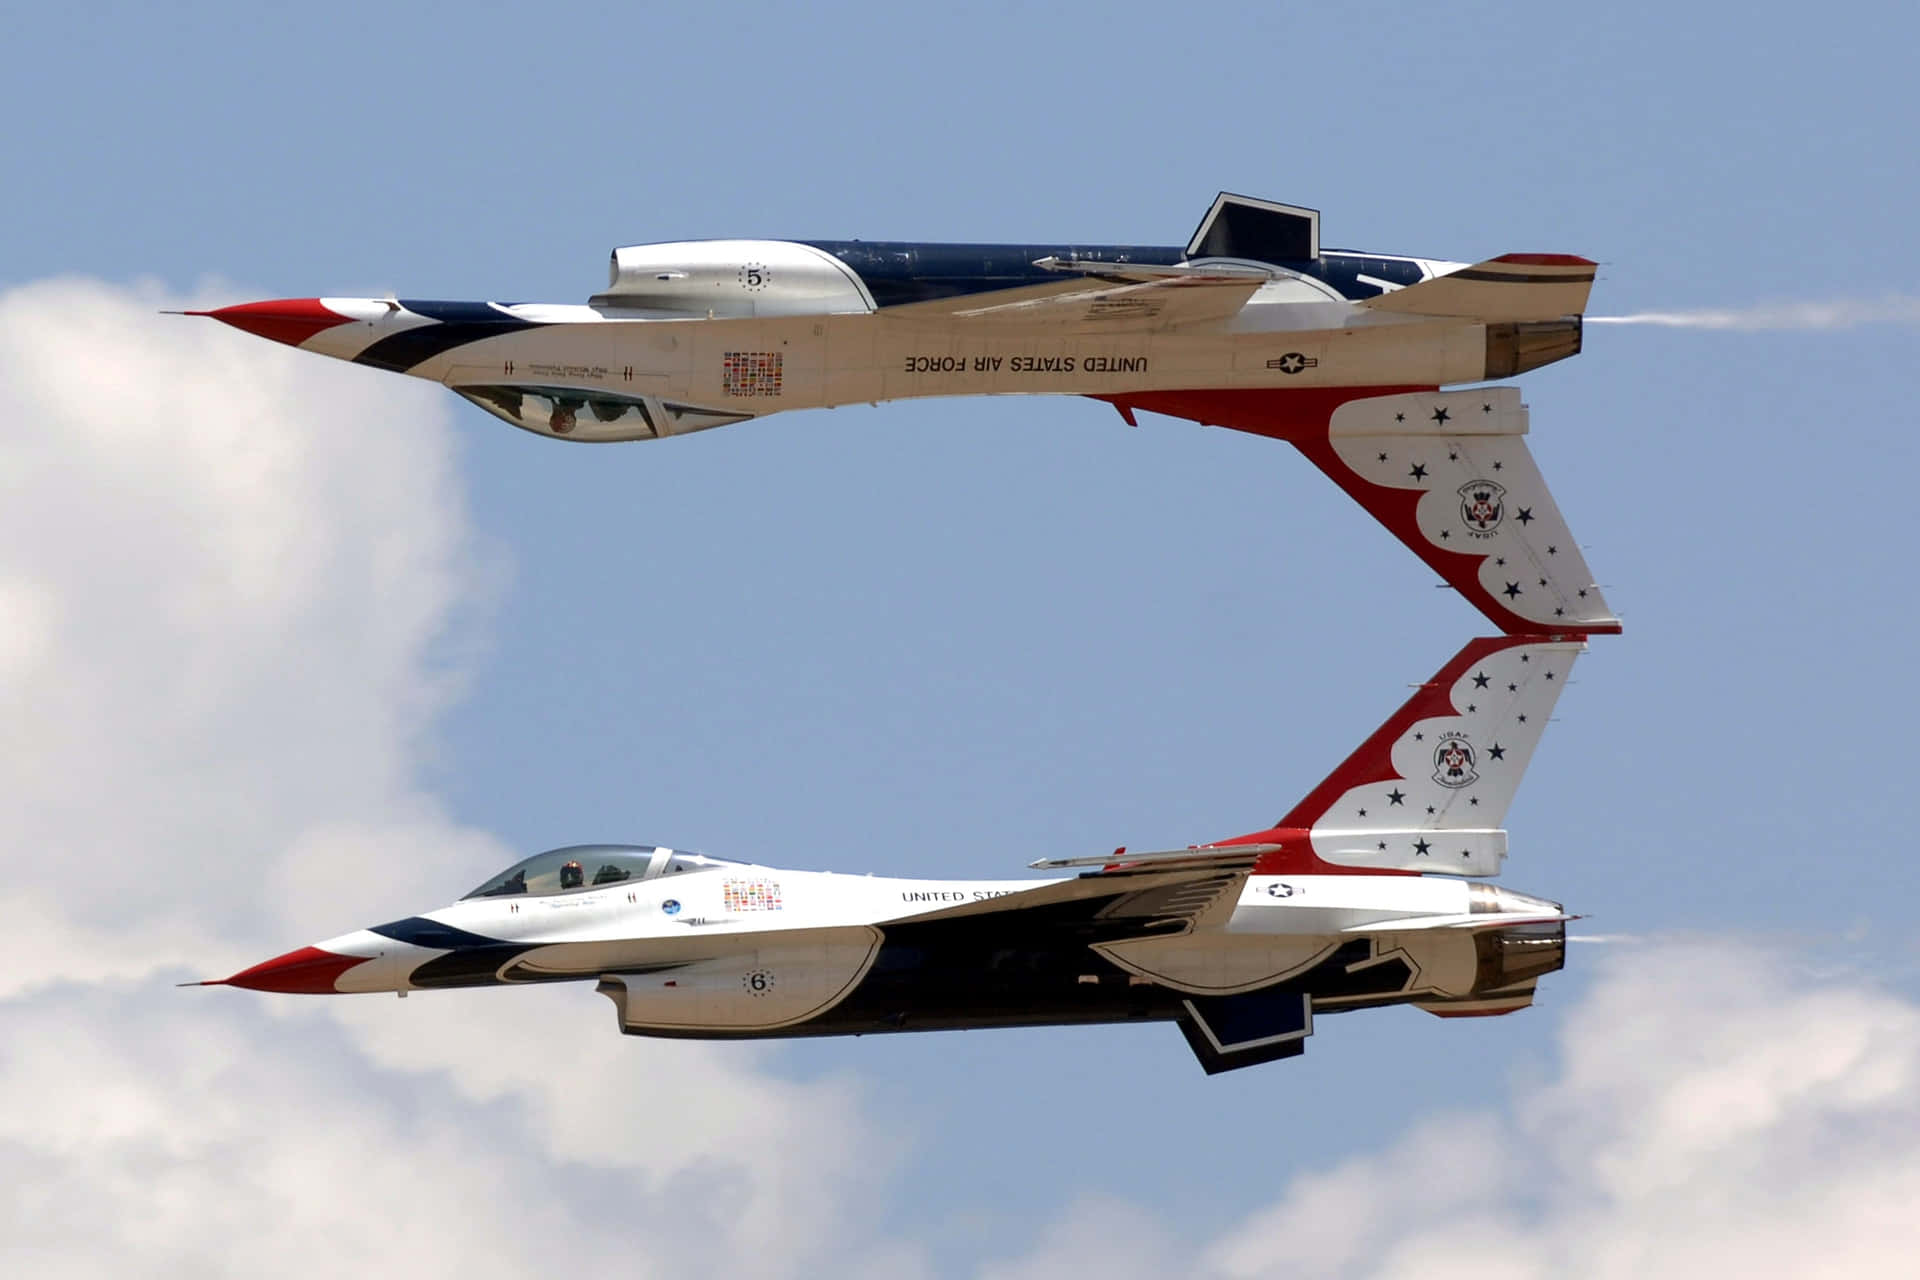 Einef-18e Super Hornet Gleitet Über Den Wolken Wallpaper